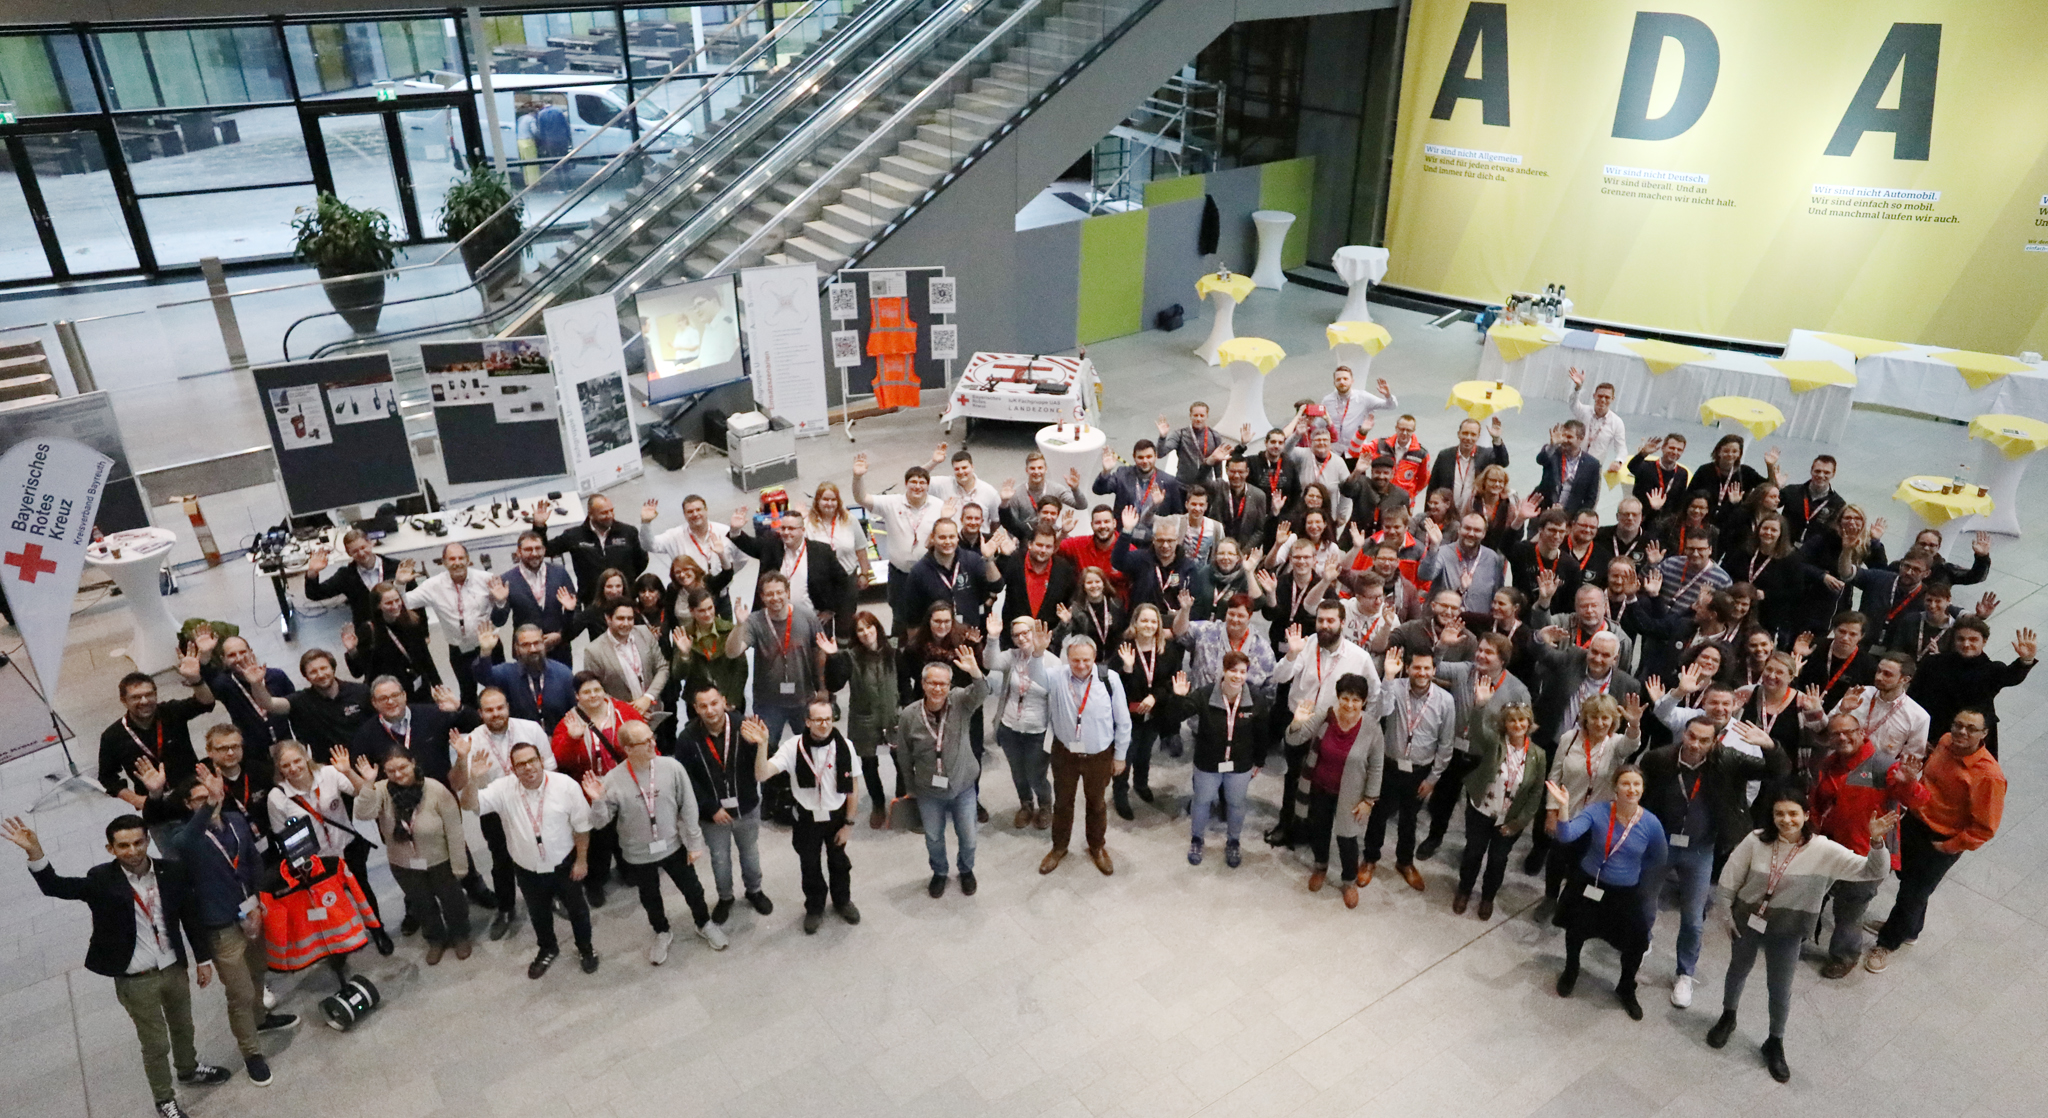 Gruppenbild vom cross media day 2018 in der ADAC-Zentrale in München